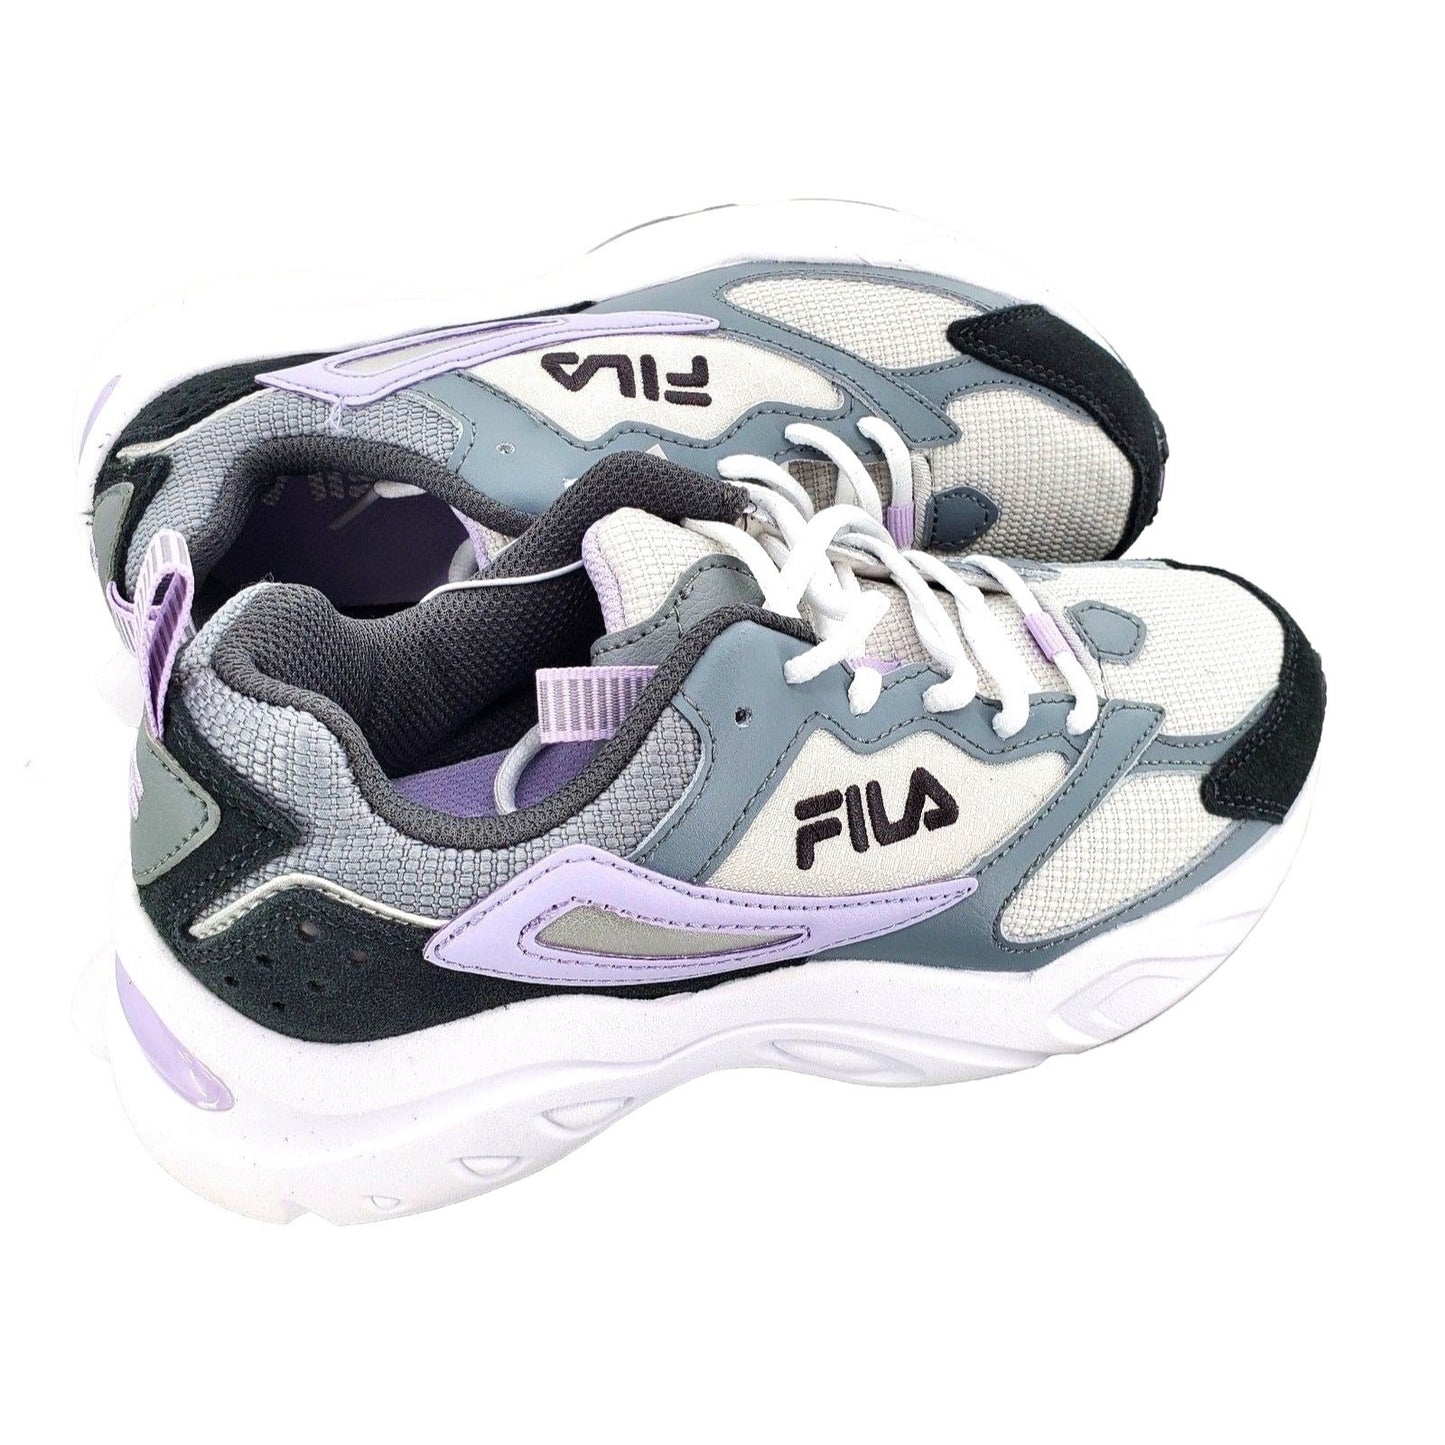 FILA Avtivewear Sneakers Women's Lilac Purple Envizion Athletic Shoes